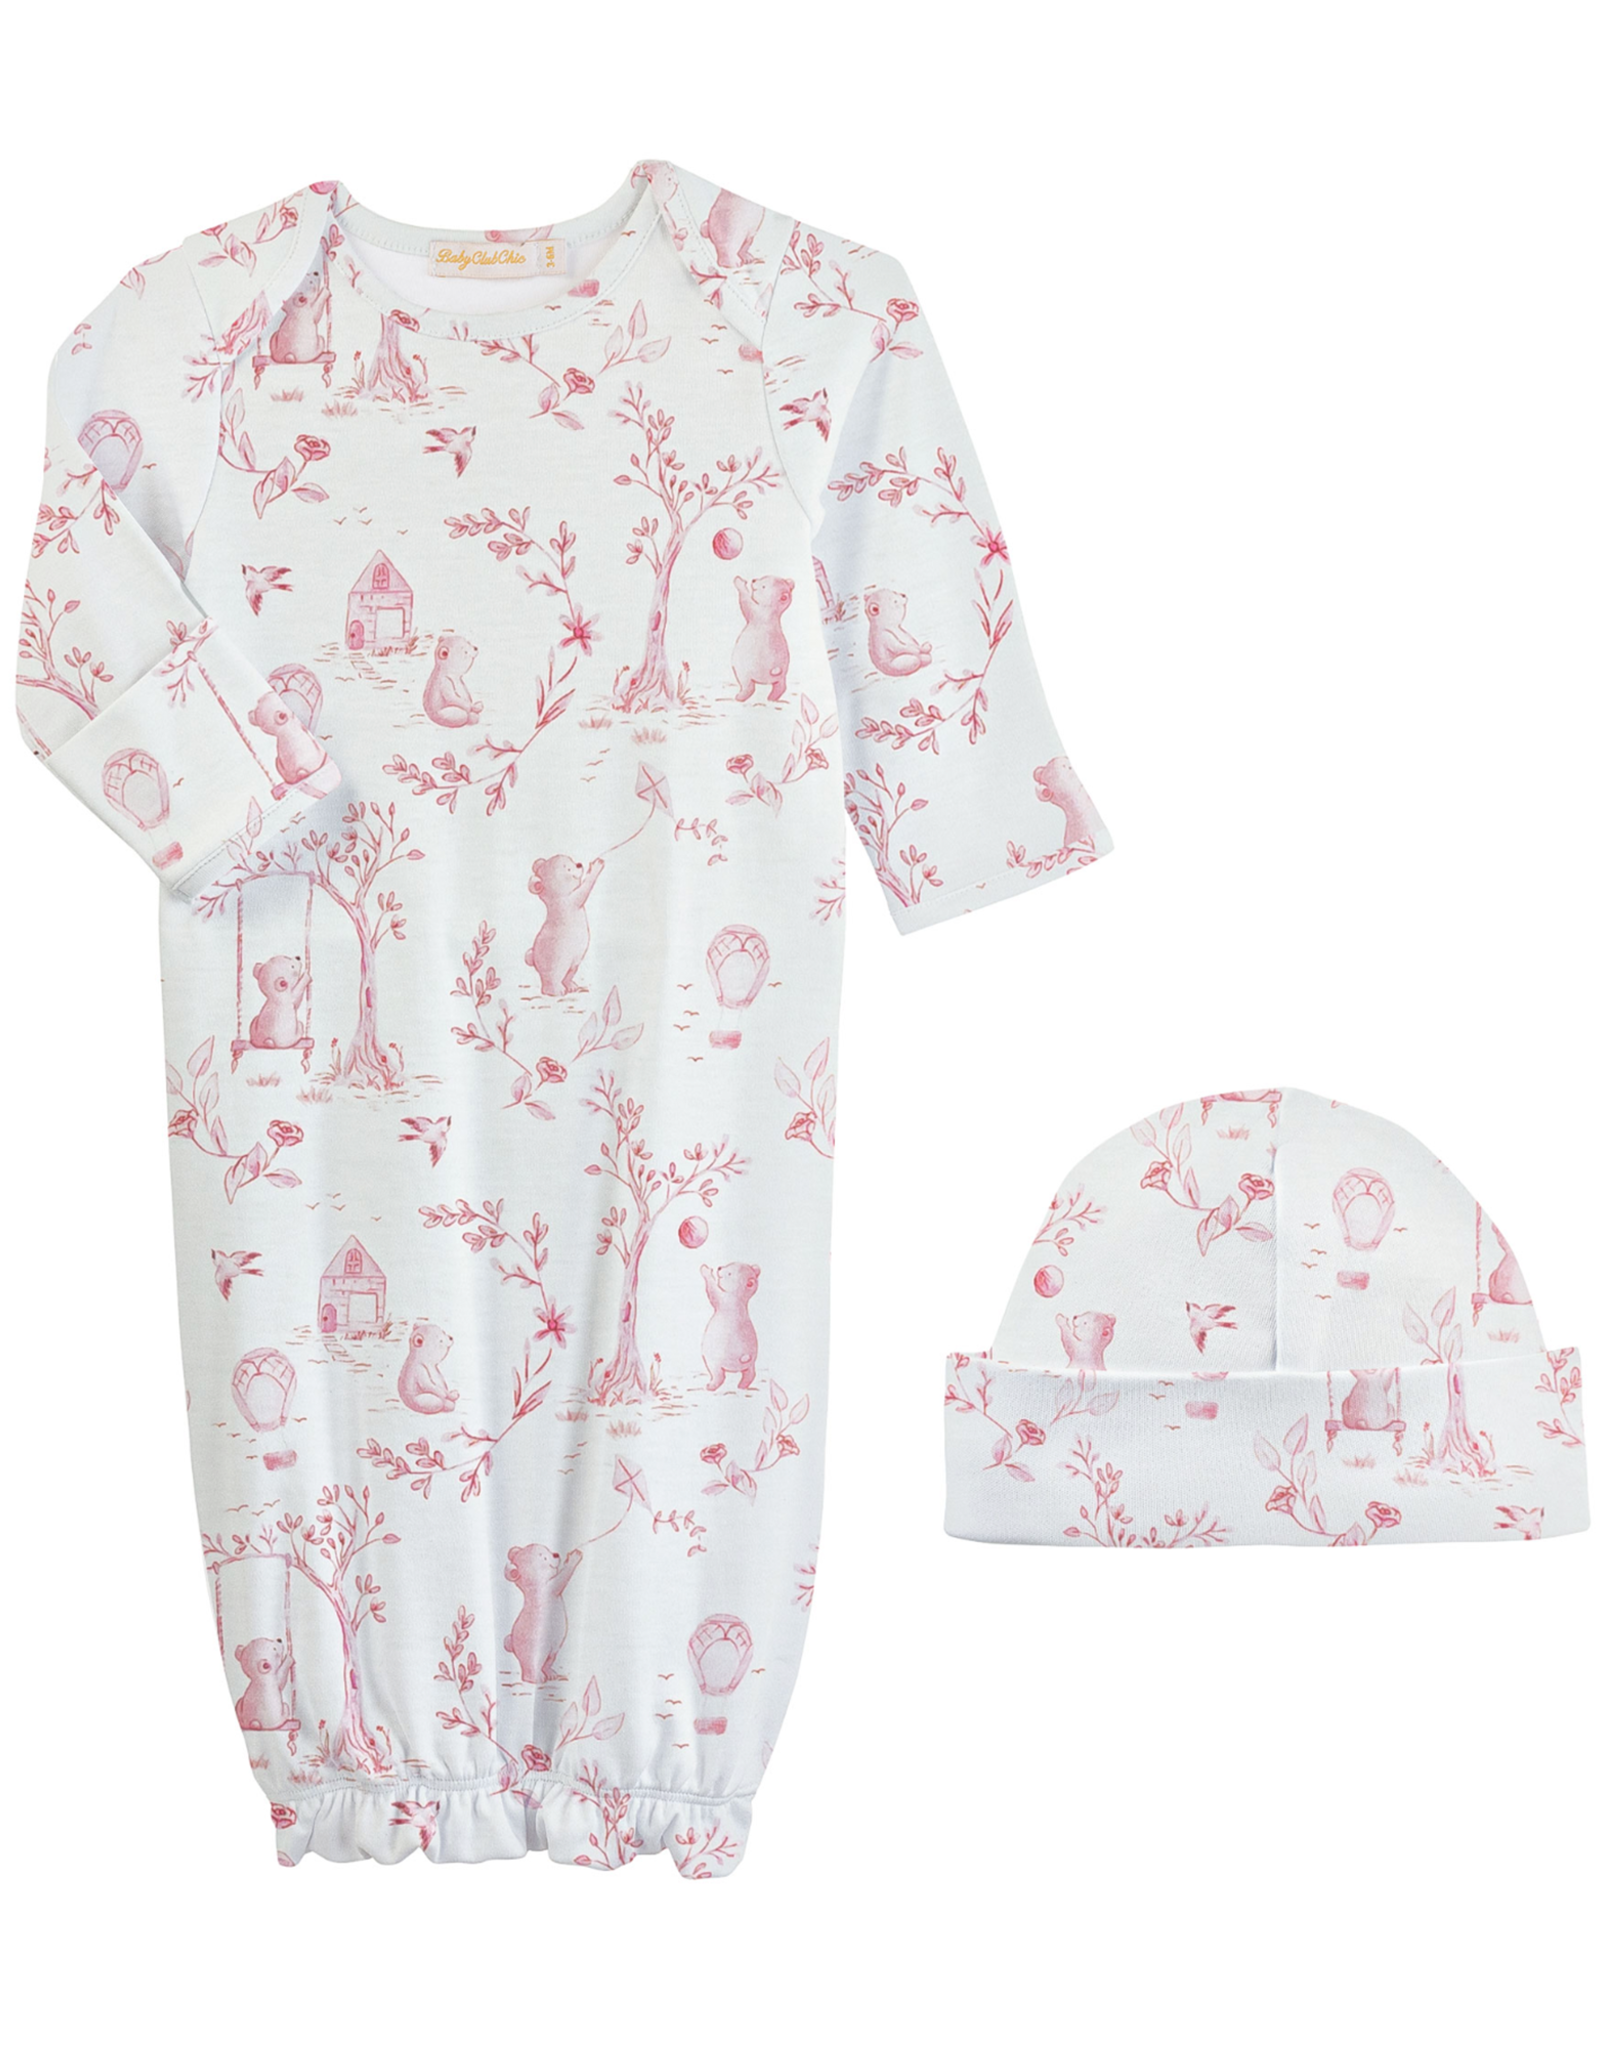 Baby Club Chic BCCS24 Toile de Juoy Gown & Hat Set